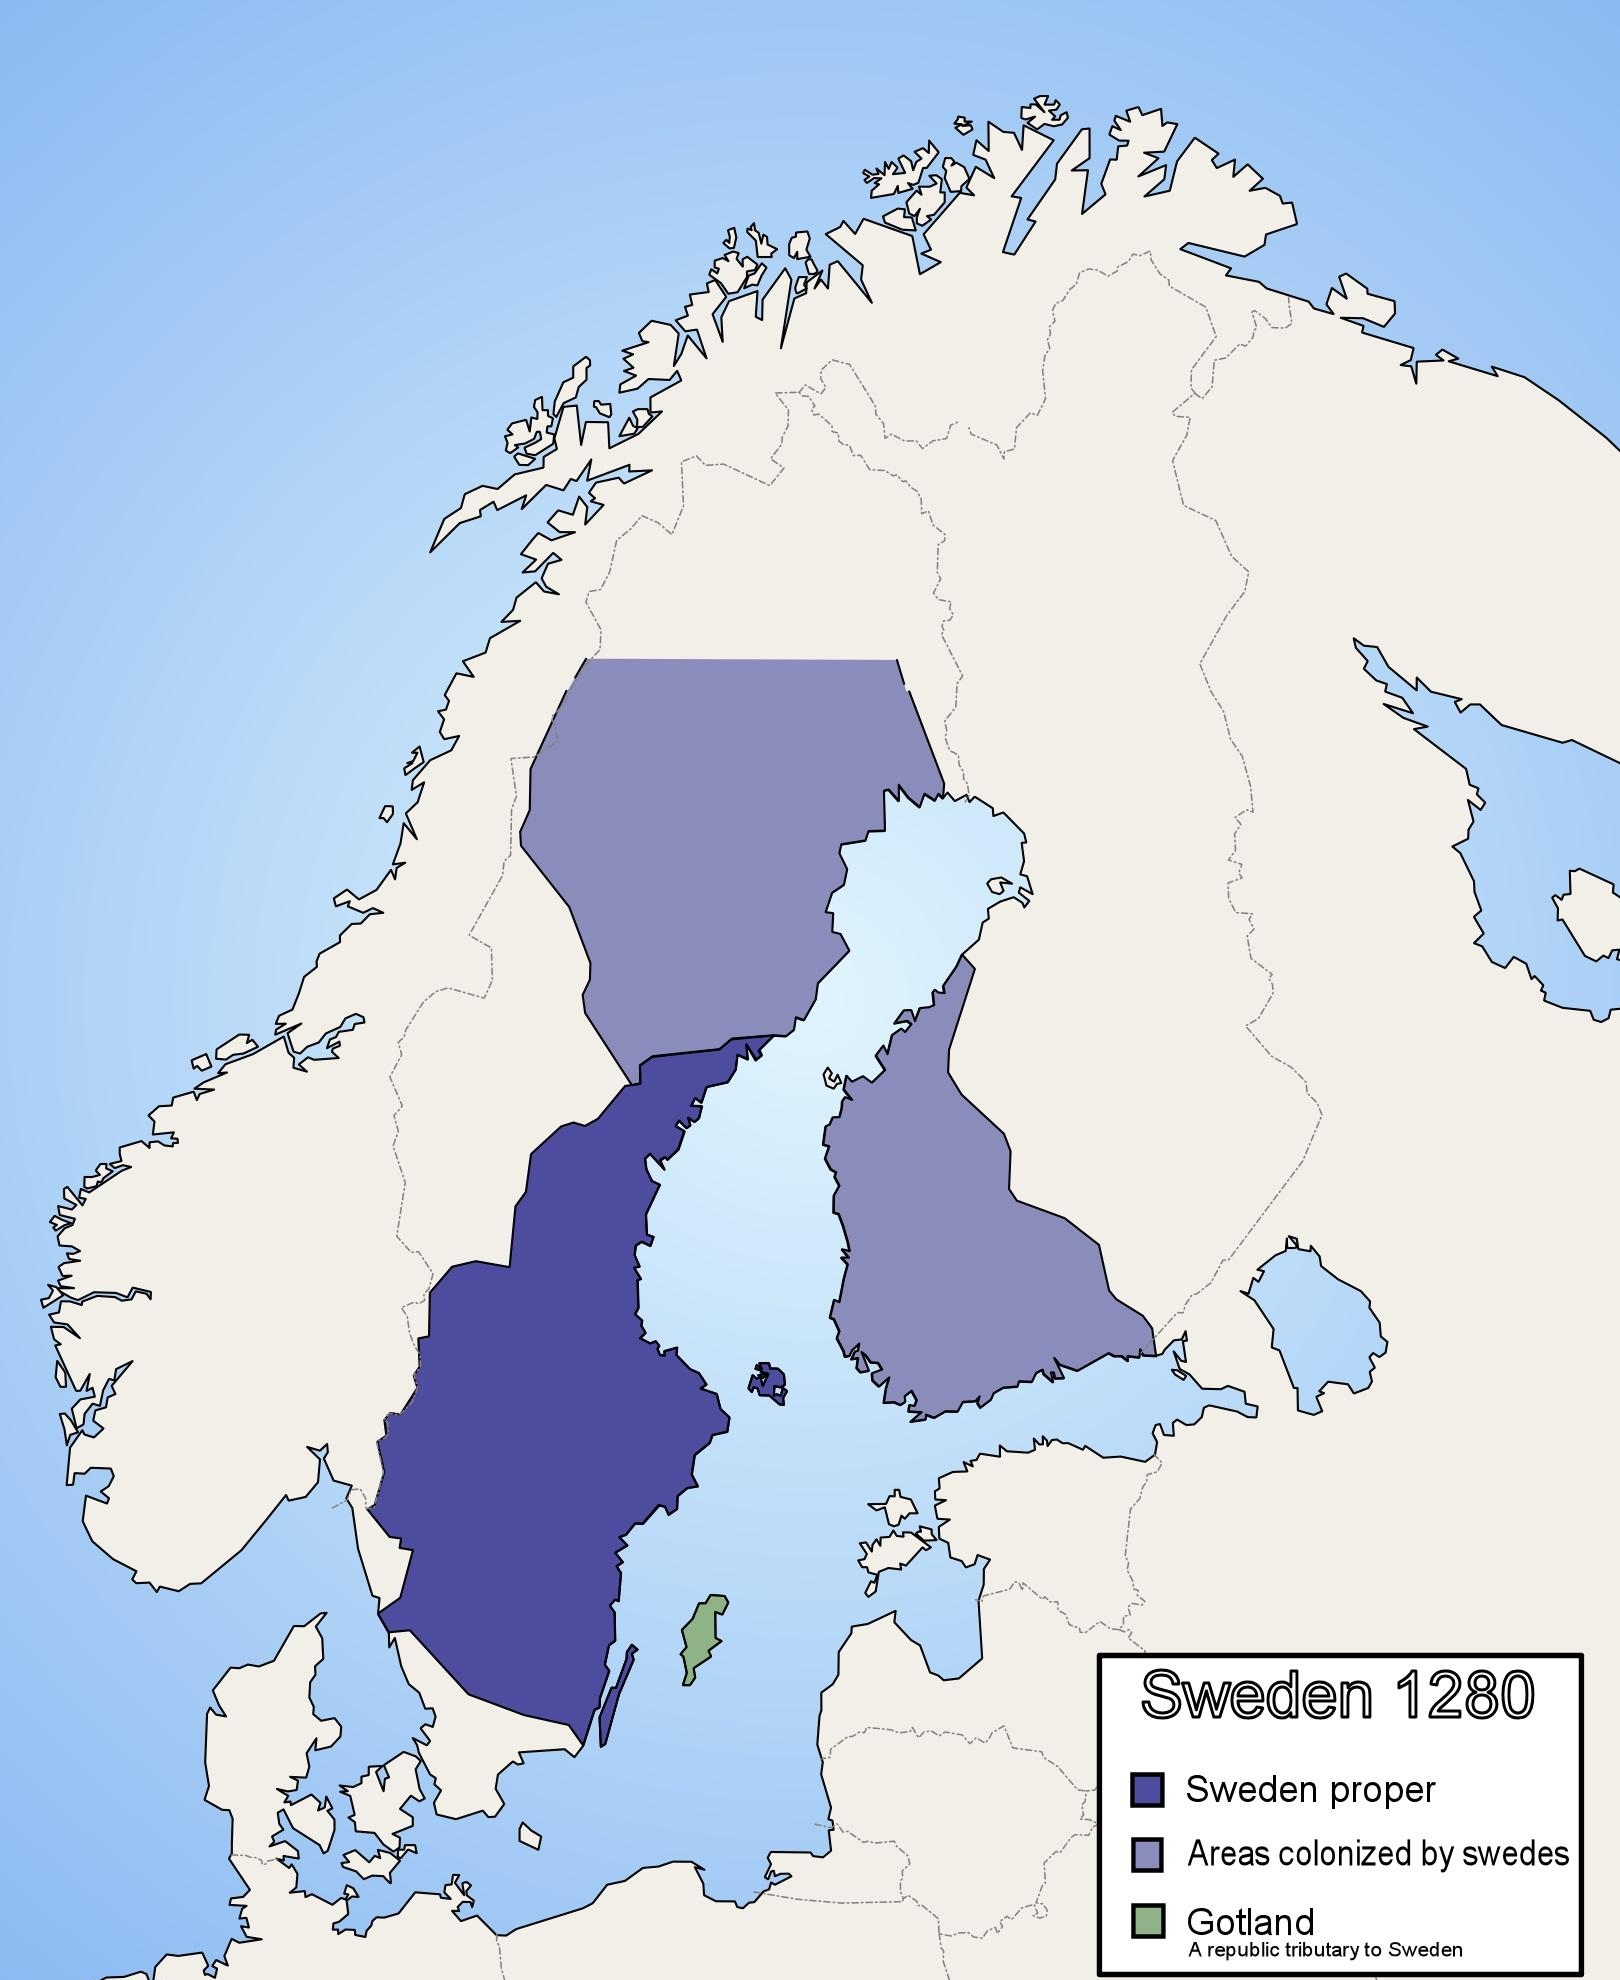 6. Швеция и колонизируемые ею территории, 1280 год